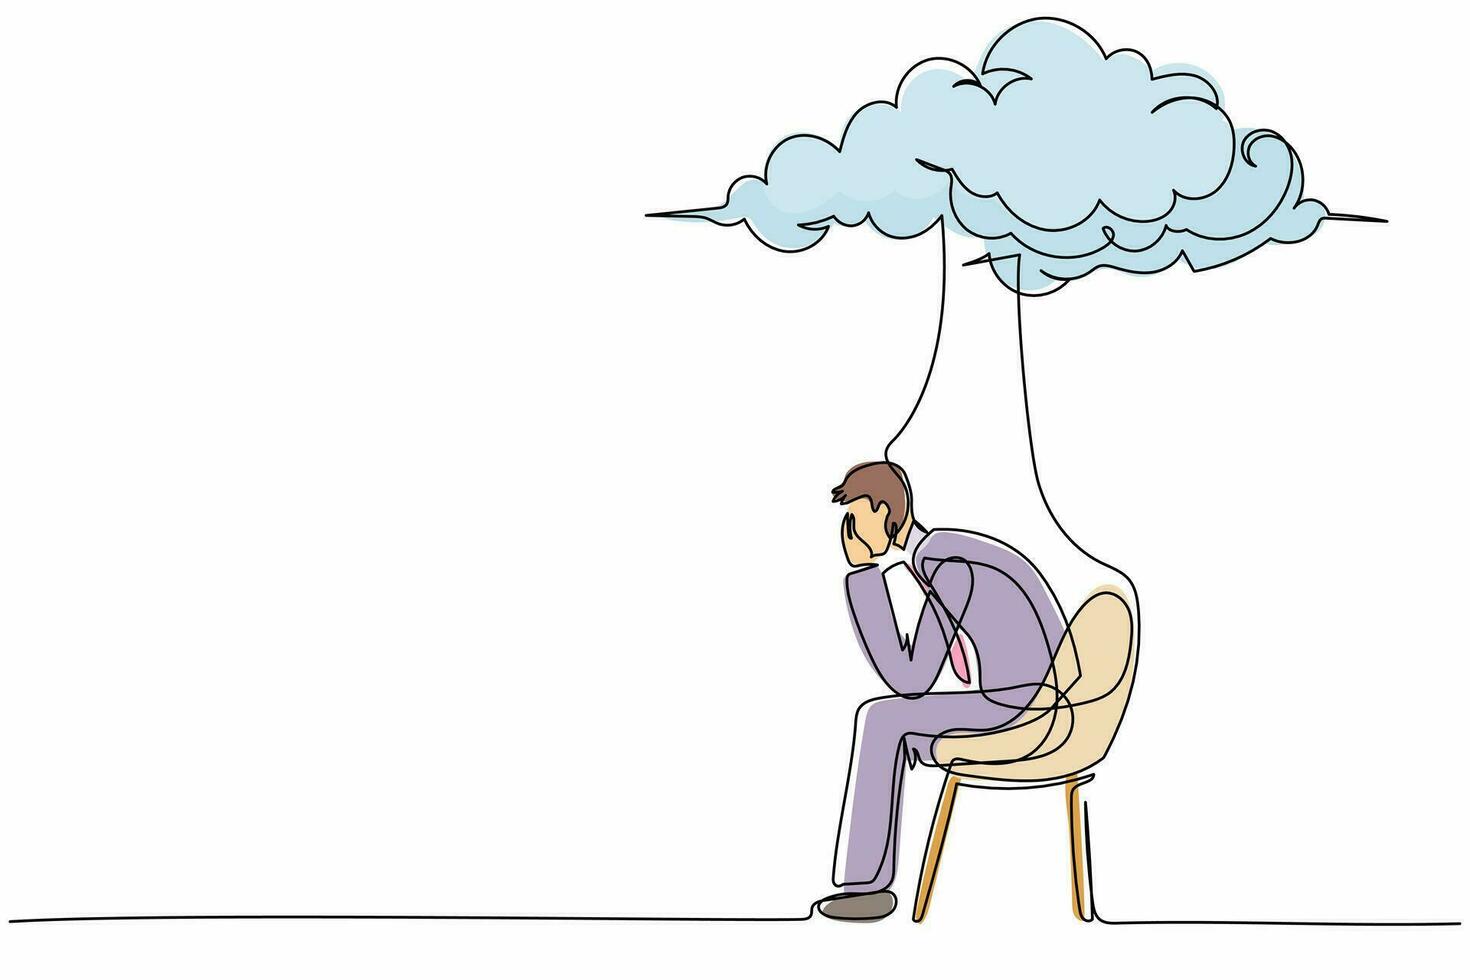 dibujo continuo de una línea empresario preocupado sentado en una silla bajo la nube de lluvia. concepto de fracaso empresarial, colapso económico, crisis económica. ilustración gráfica de vector de diseño de dibujo de una sola línea